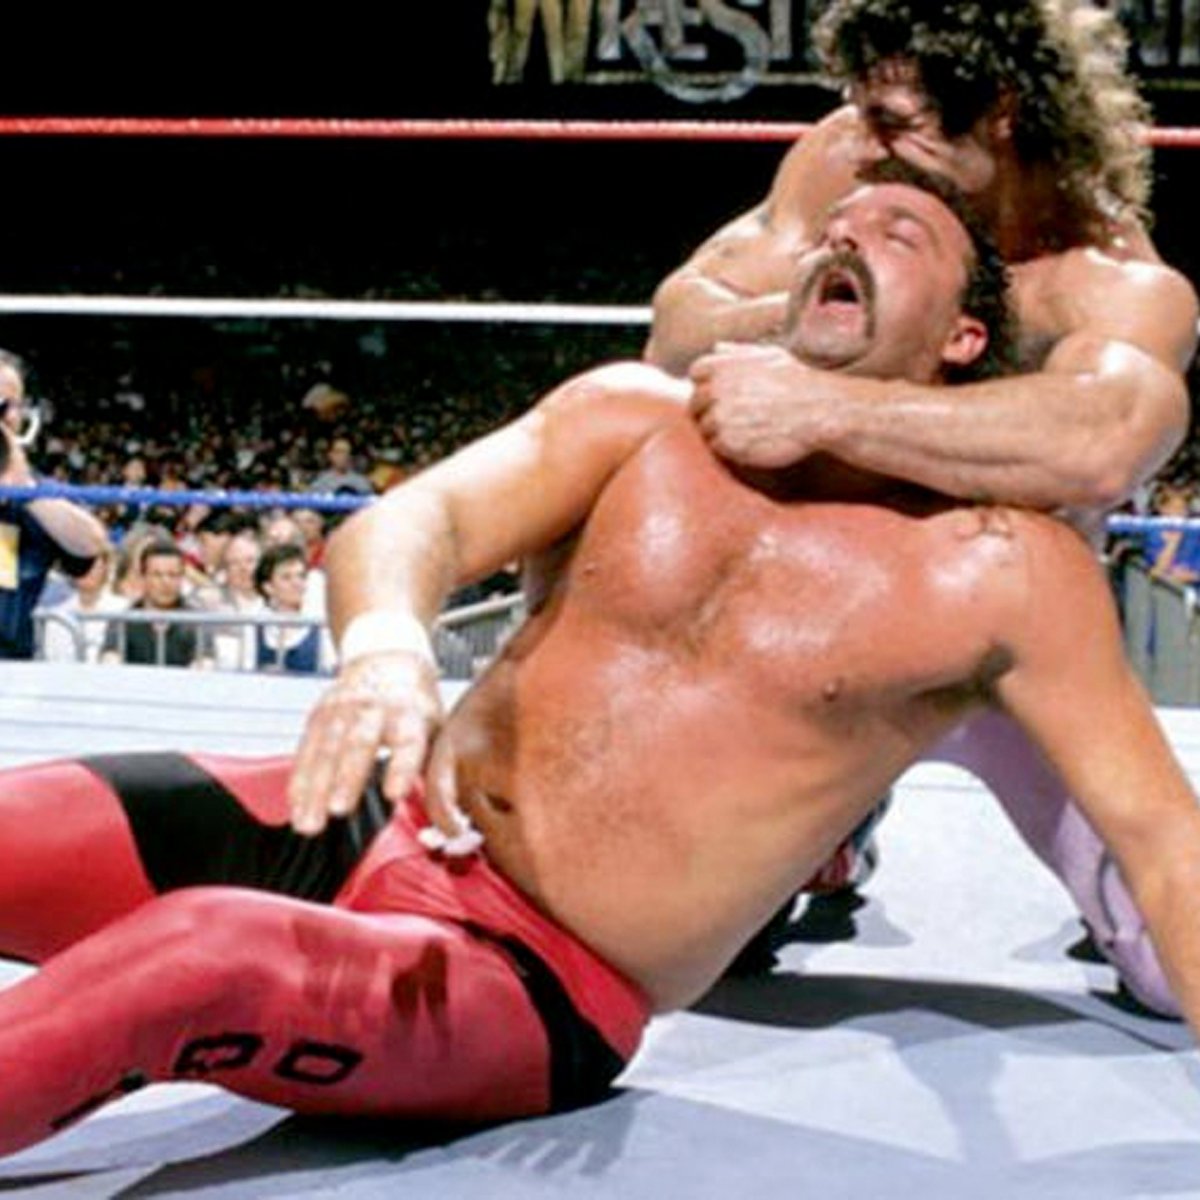 Jakks custom of @jakethesnakeddt from his WrestleMania IV match against Rick Rude. Swipe ⬅️ for more pics. DM me for commissions!